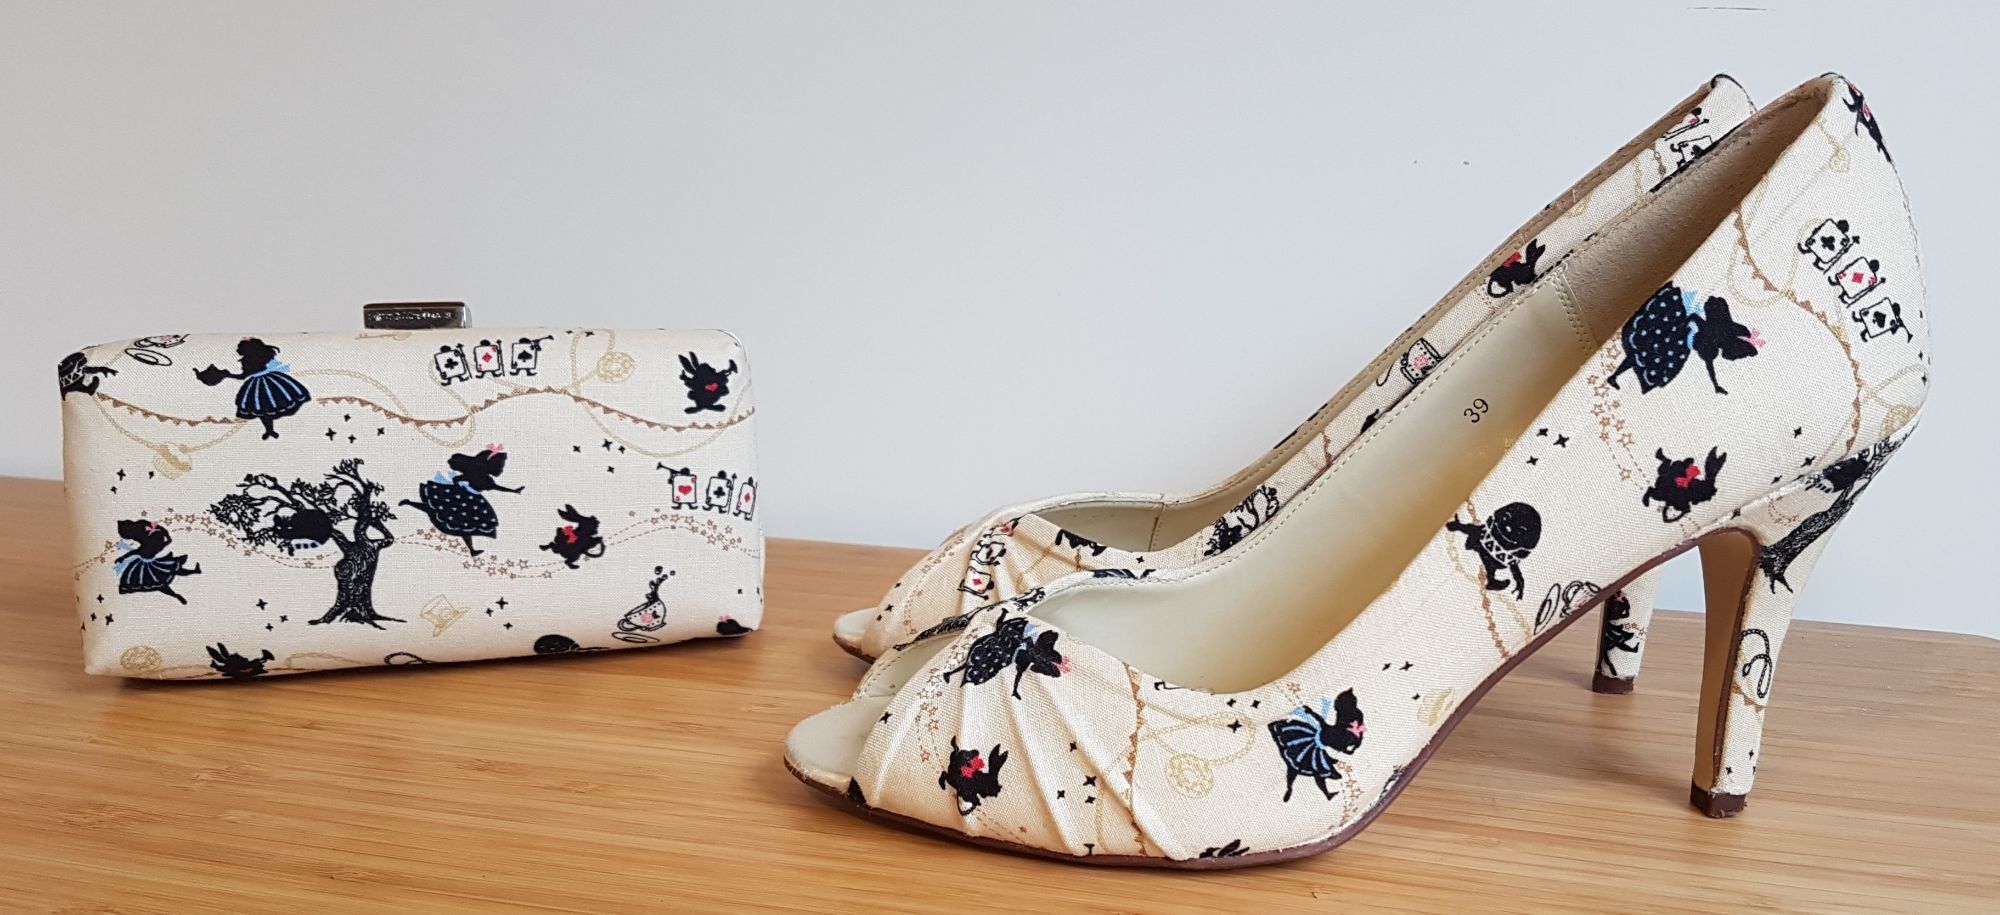 Alice in Wonderland heels and clutch bag